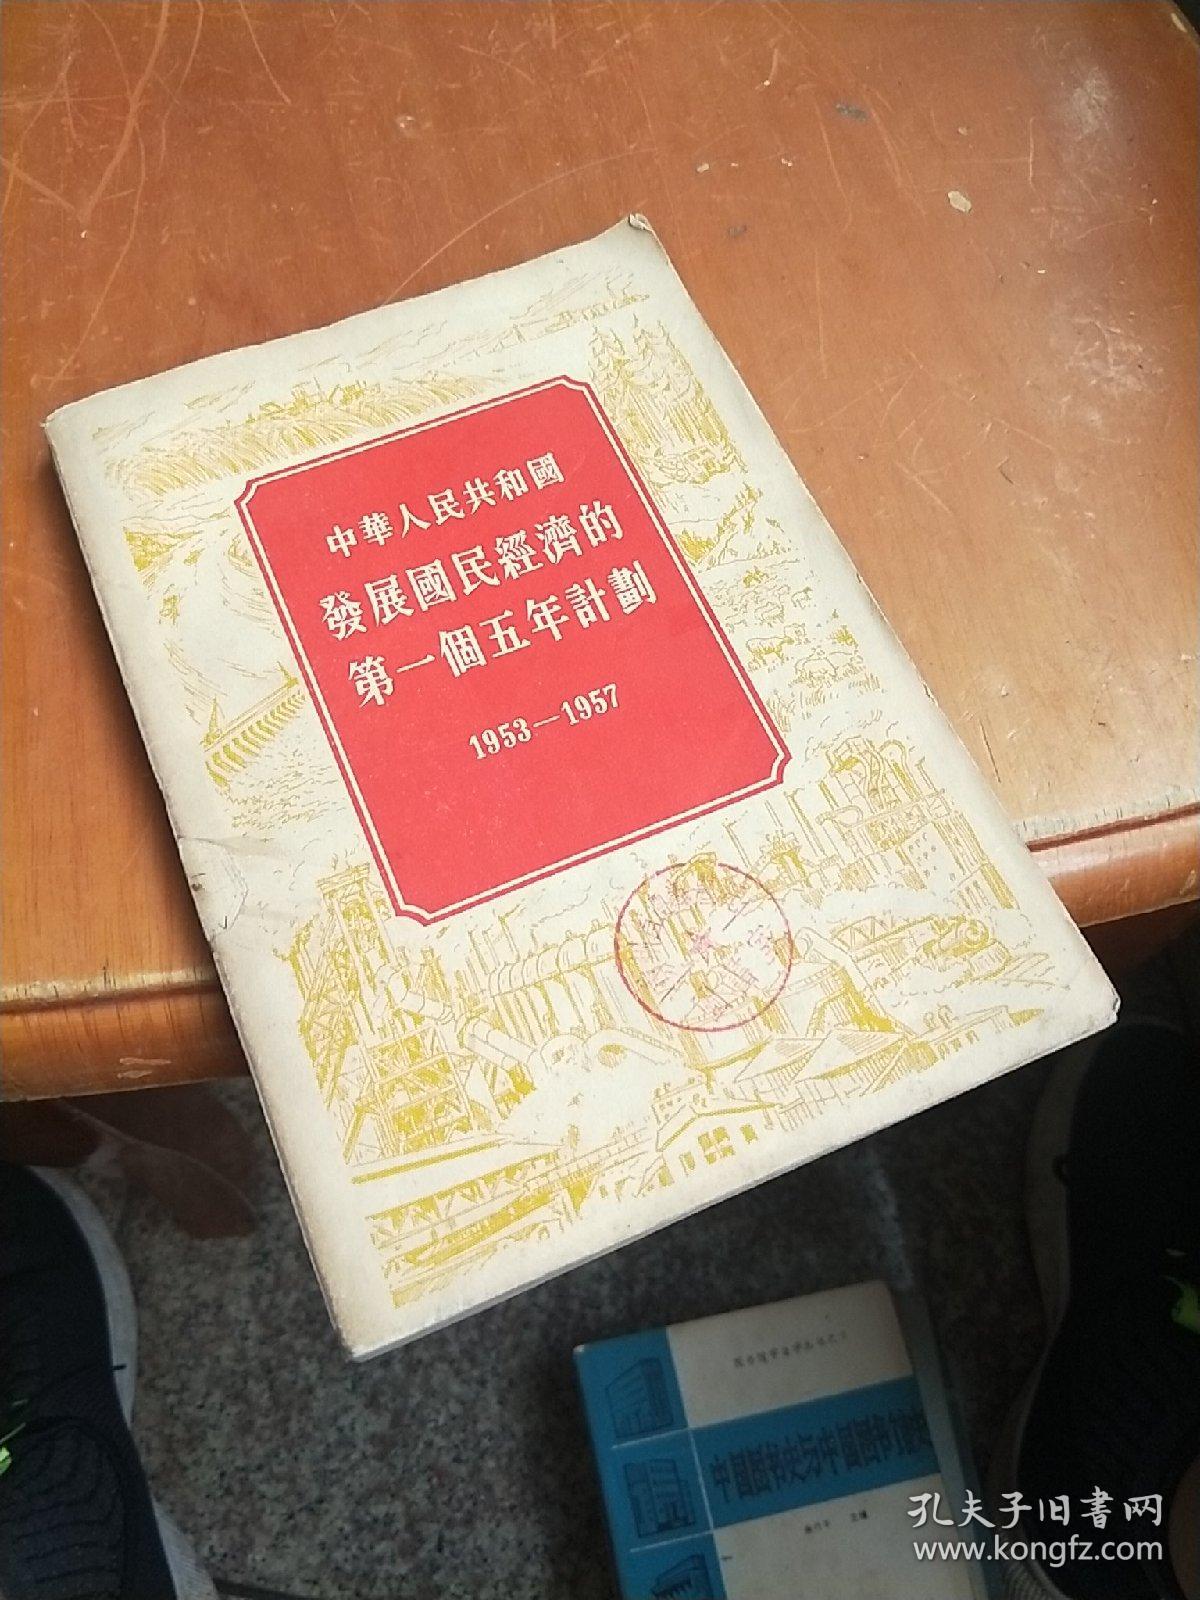 中华人民共和国发展国民经济的第一个五年计划(1953一1957)